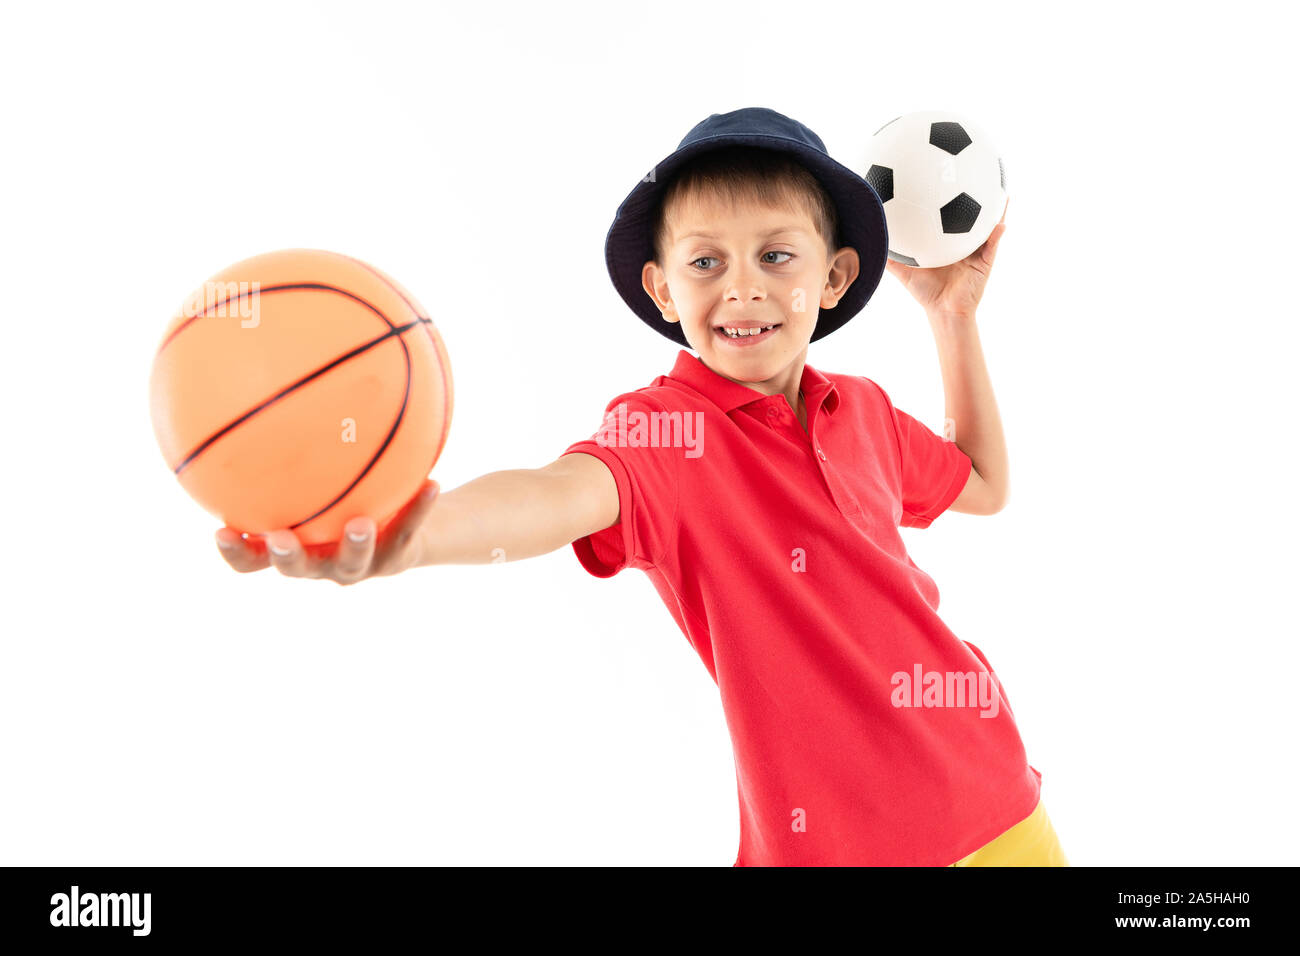 Un petit garçon au Panama, maillot jaune, short rouge et blanc sneakers les peuplements avec des ballons de foot et de basket-ball Banque D'Images